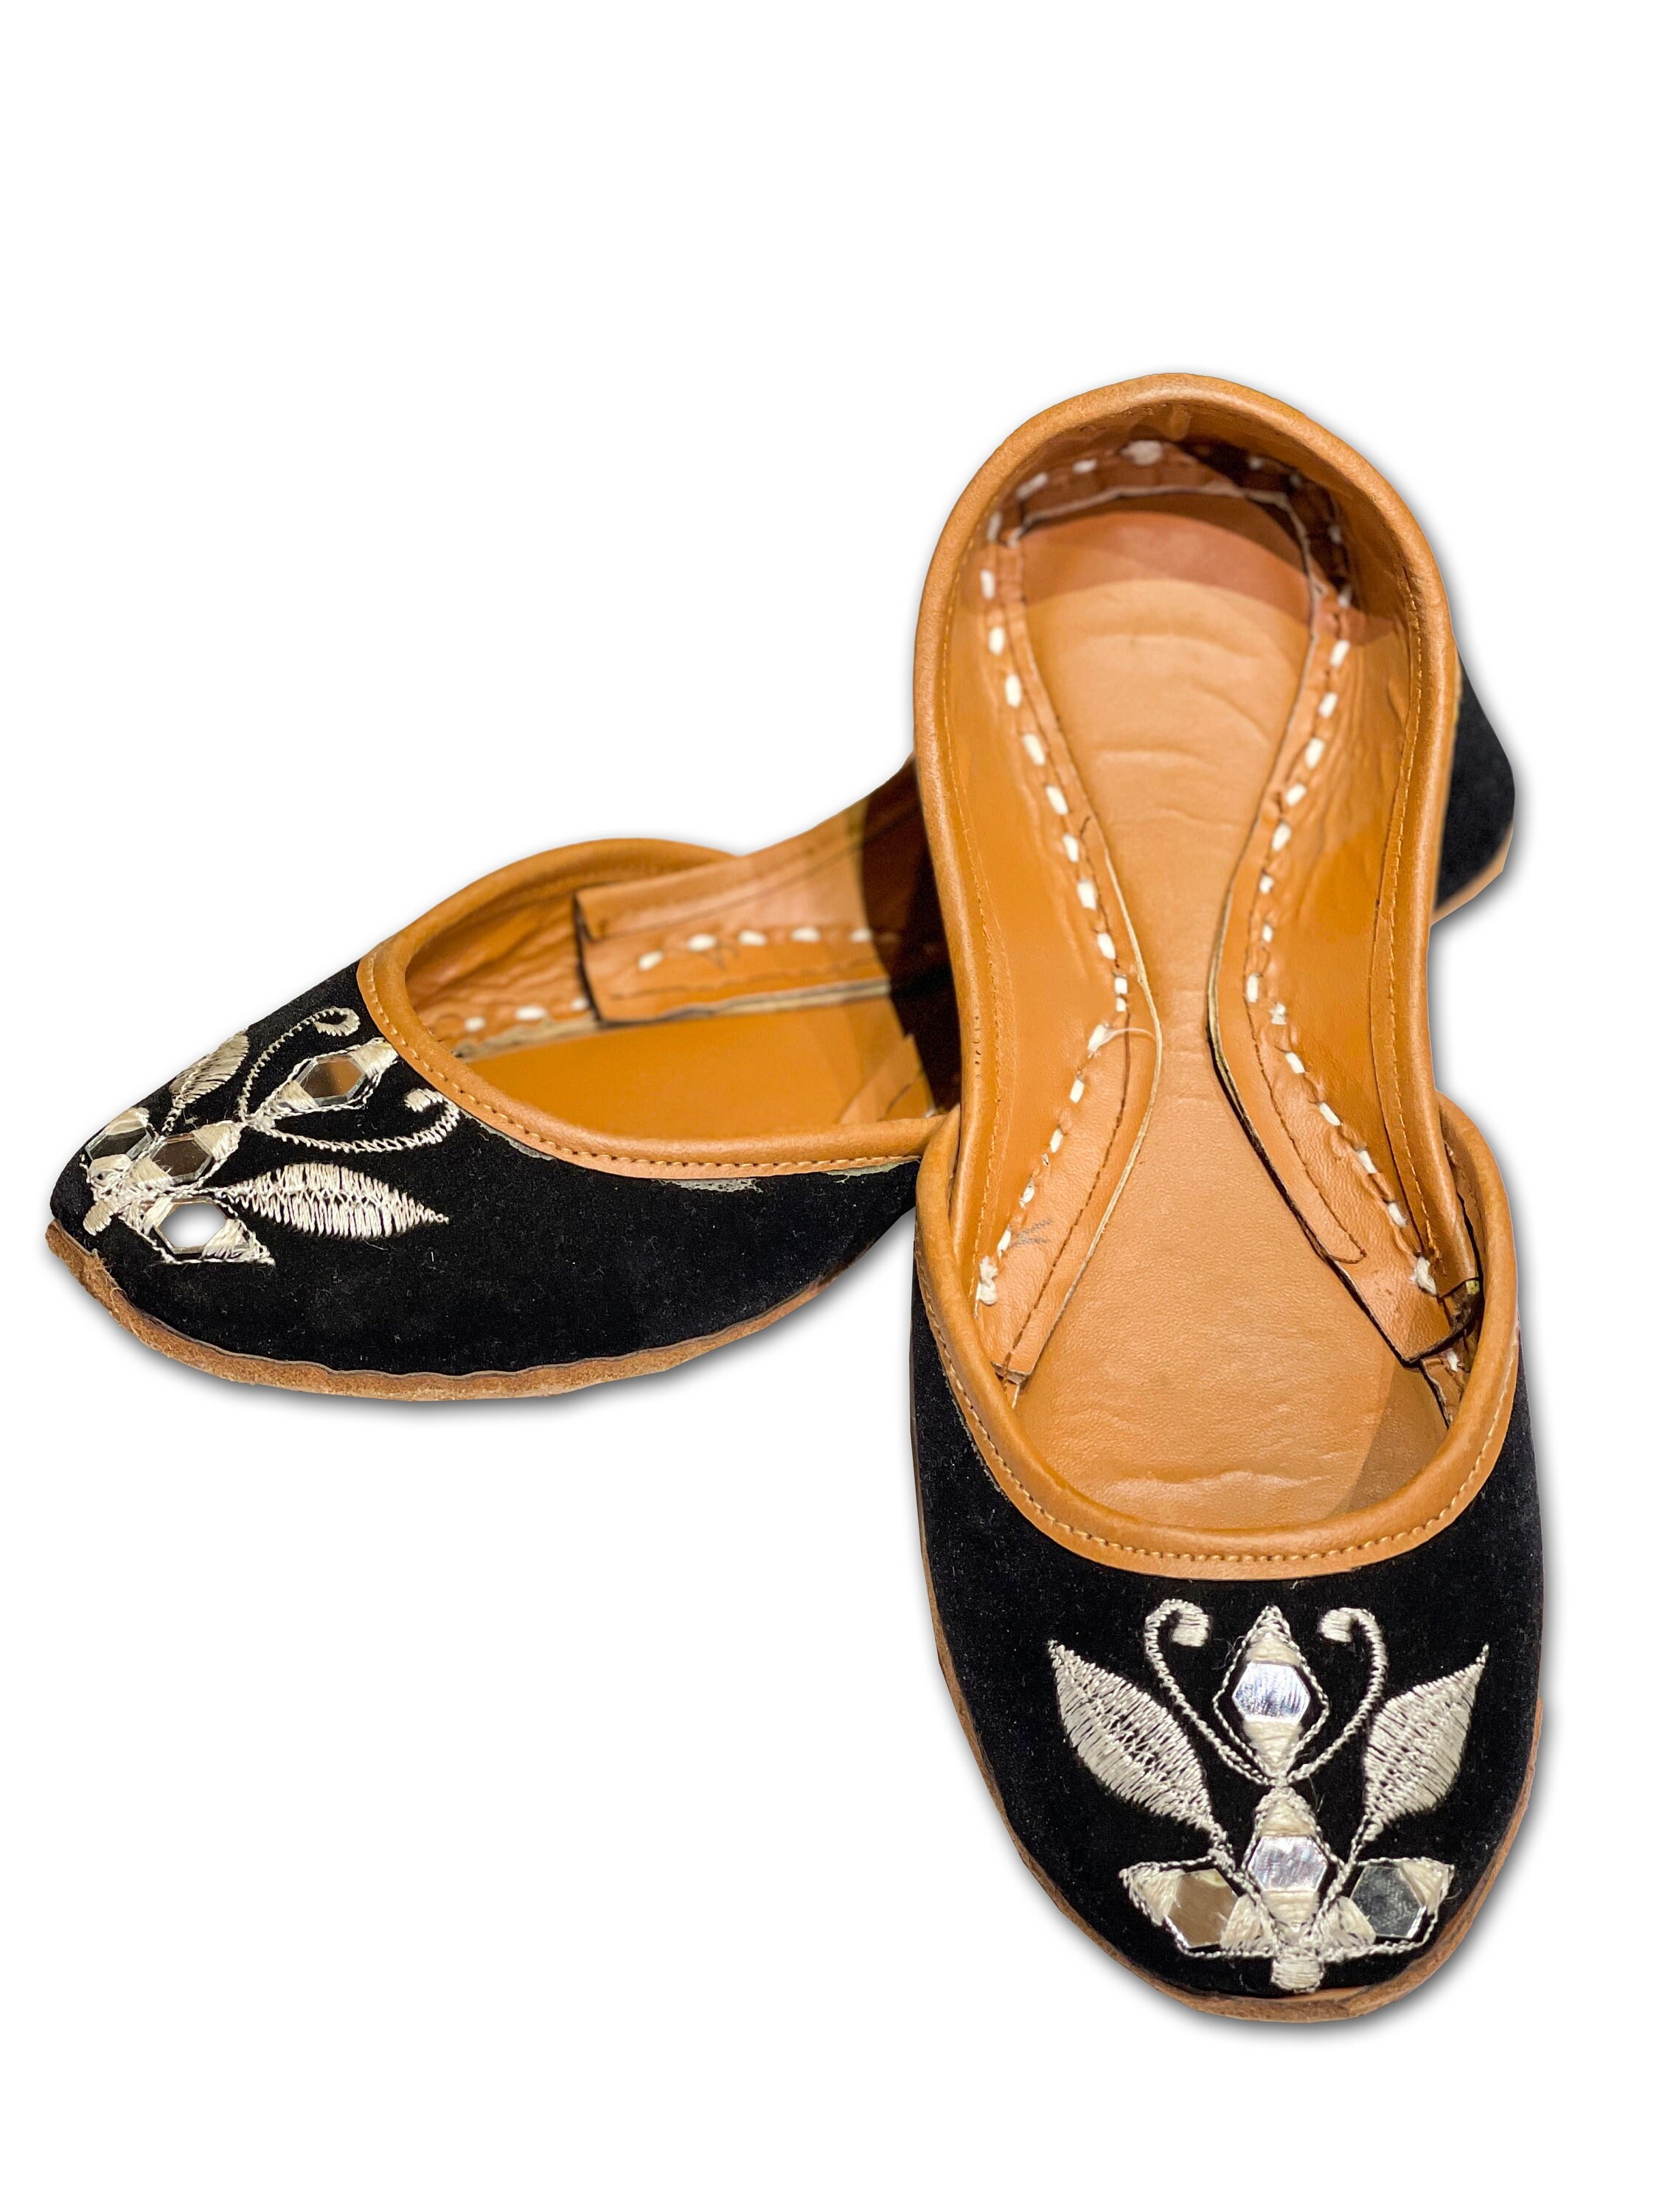 Zonnebloem Juttis voor vrouwen Schoenen damesschoenen Instappers Juttis en mojaris gratis verzending Pakistaanse outfit bruids Khussa 